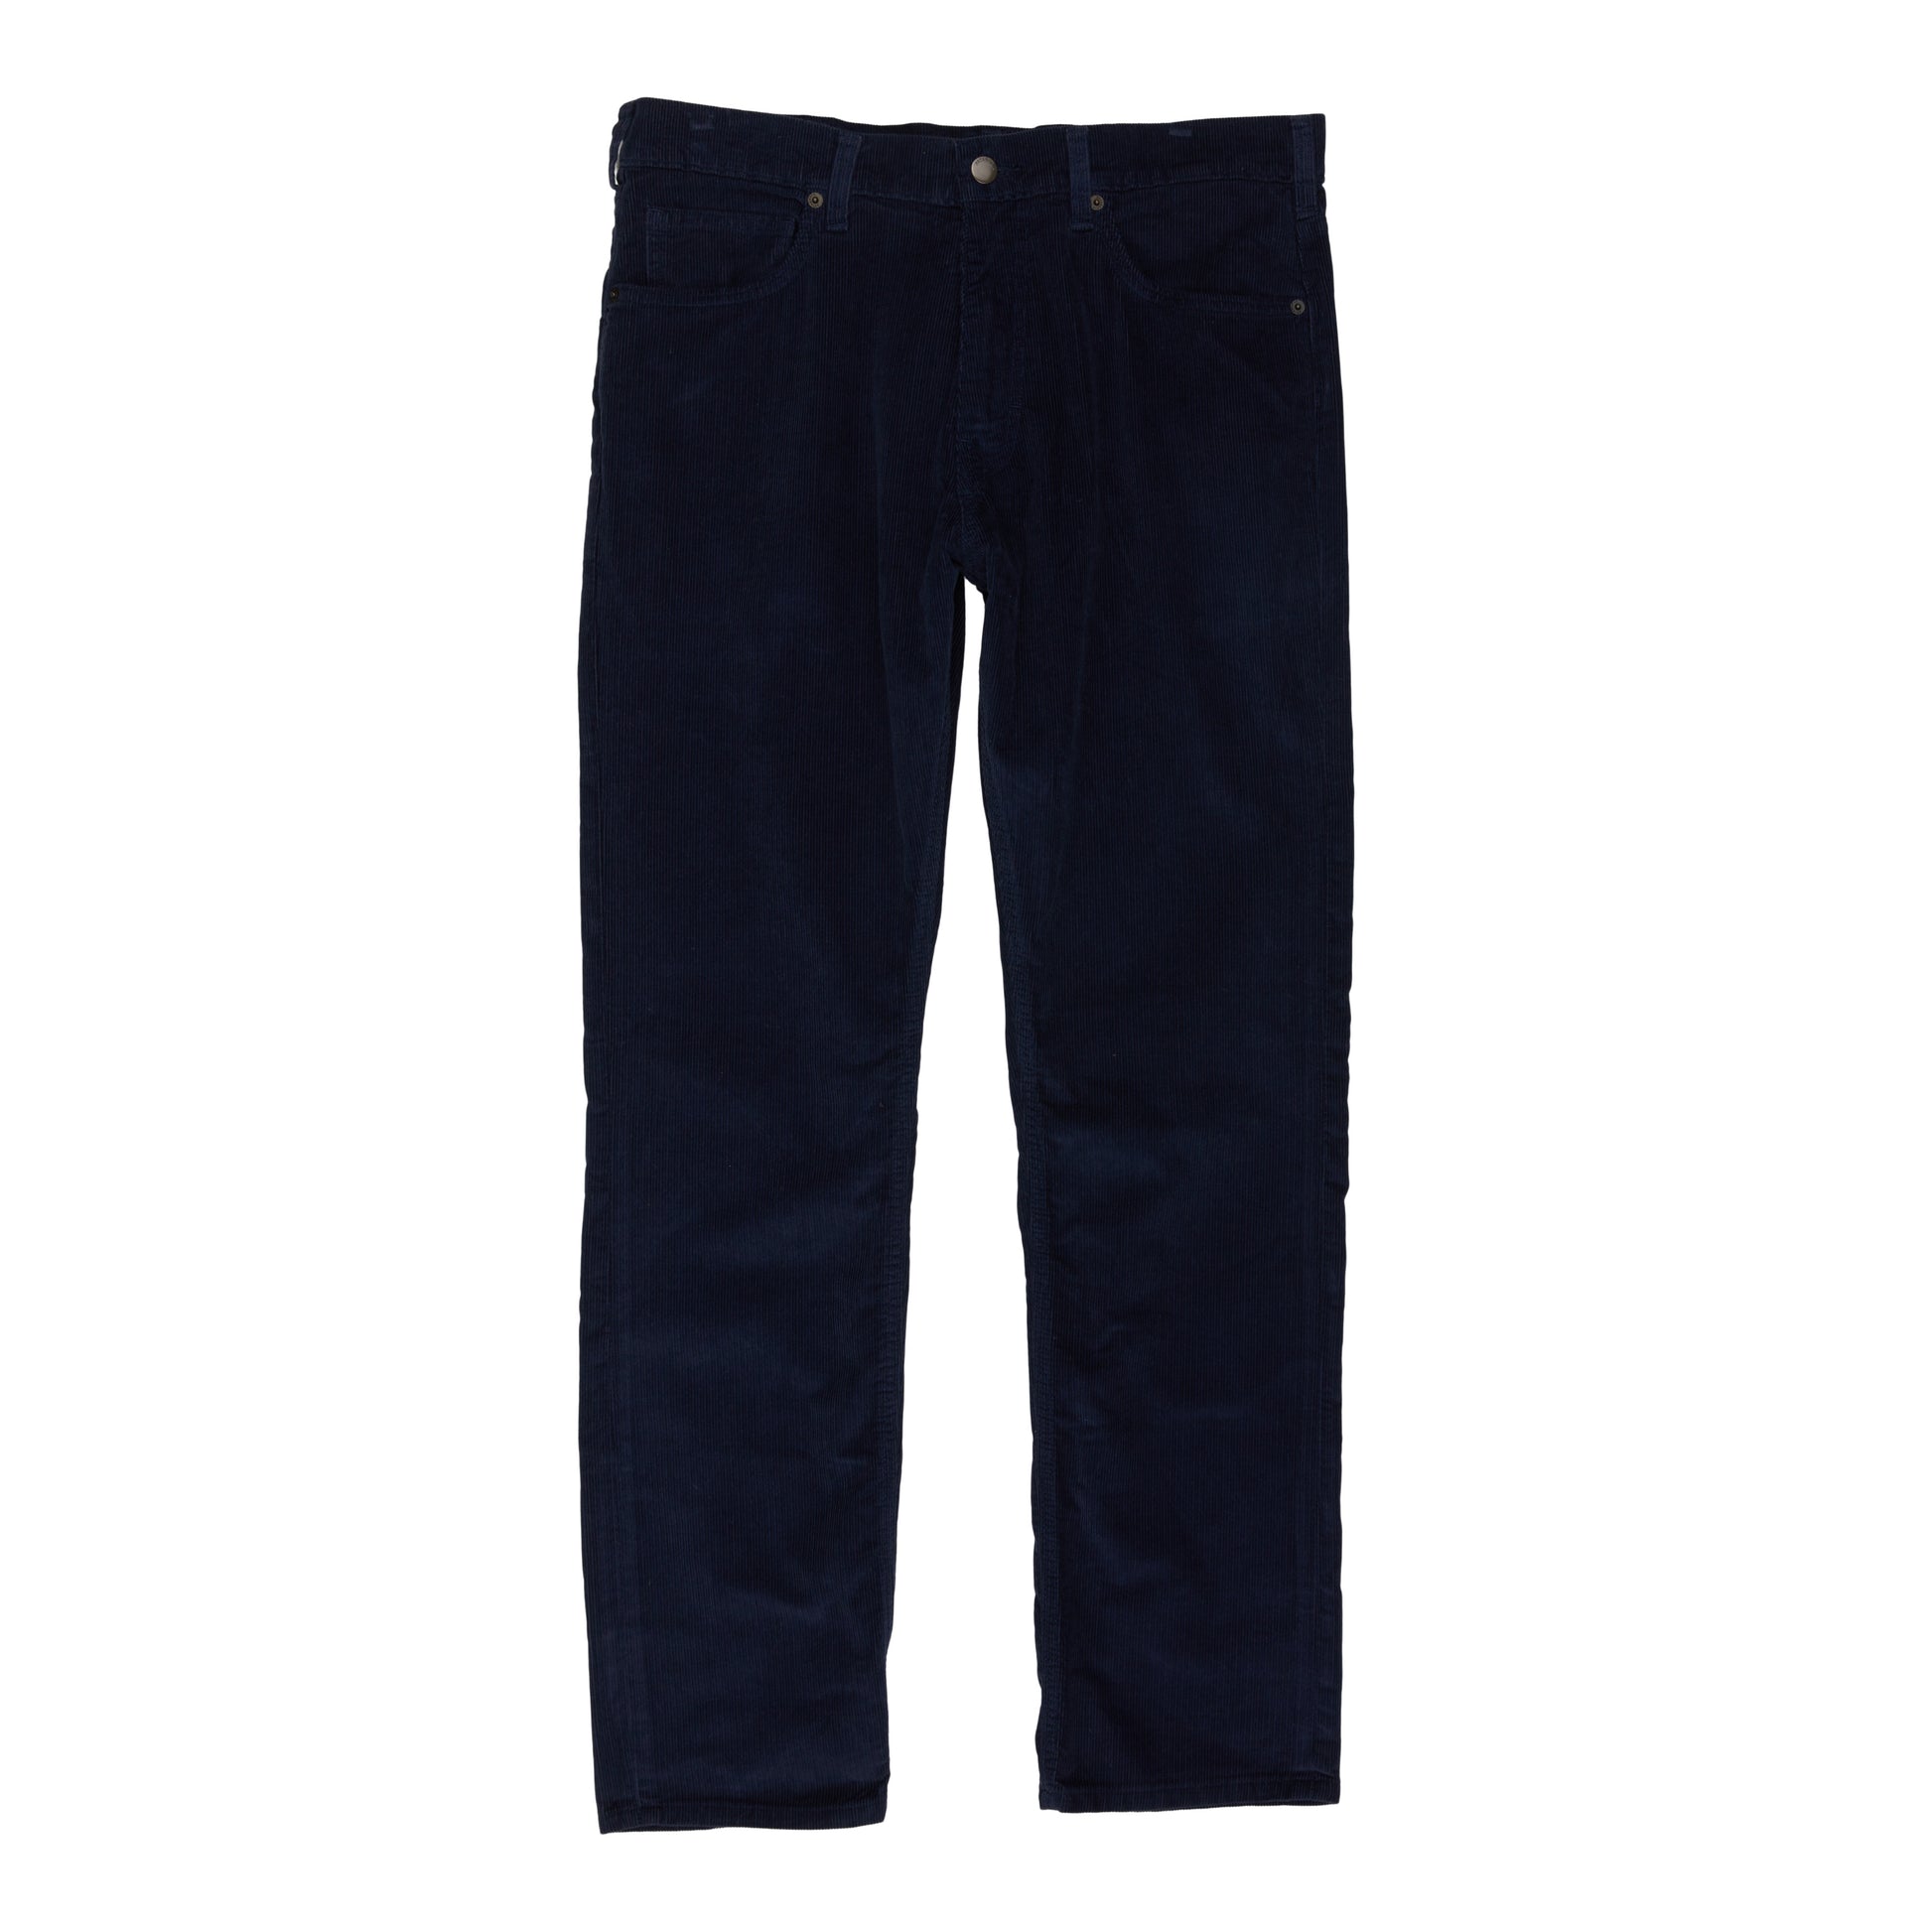 Patagonia Men's Organic Cotton Corduroy Jeans - Regular